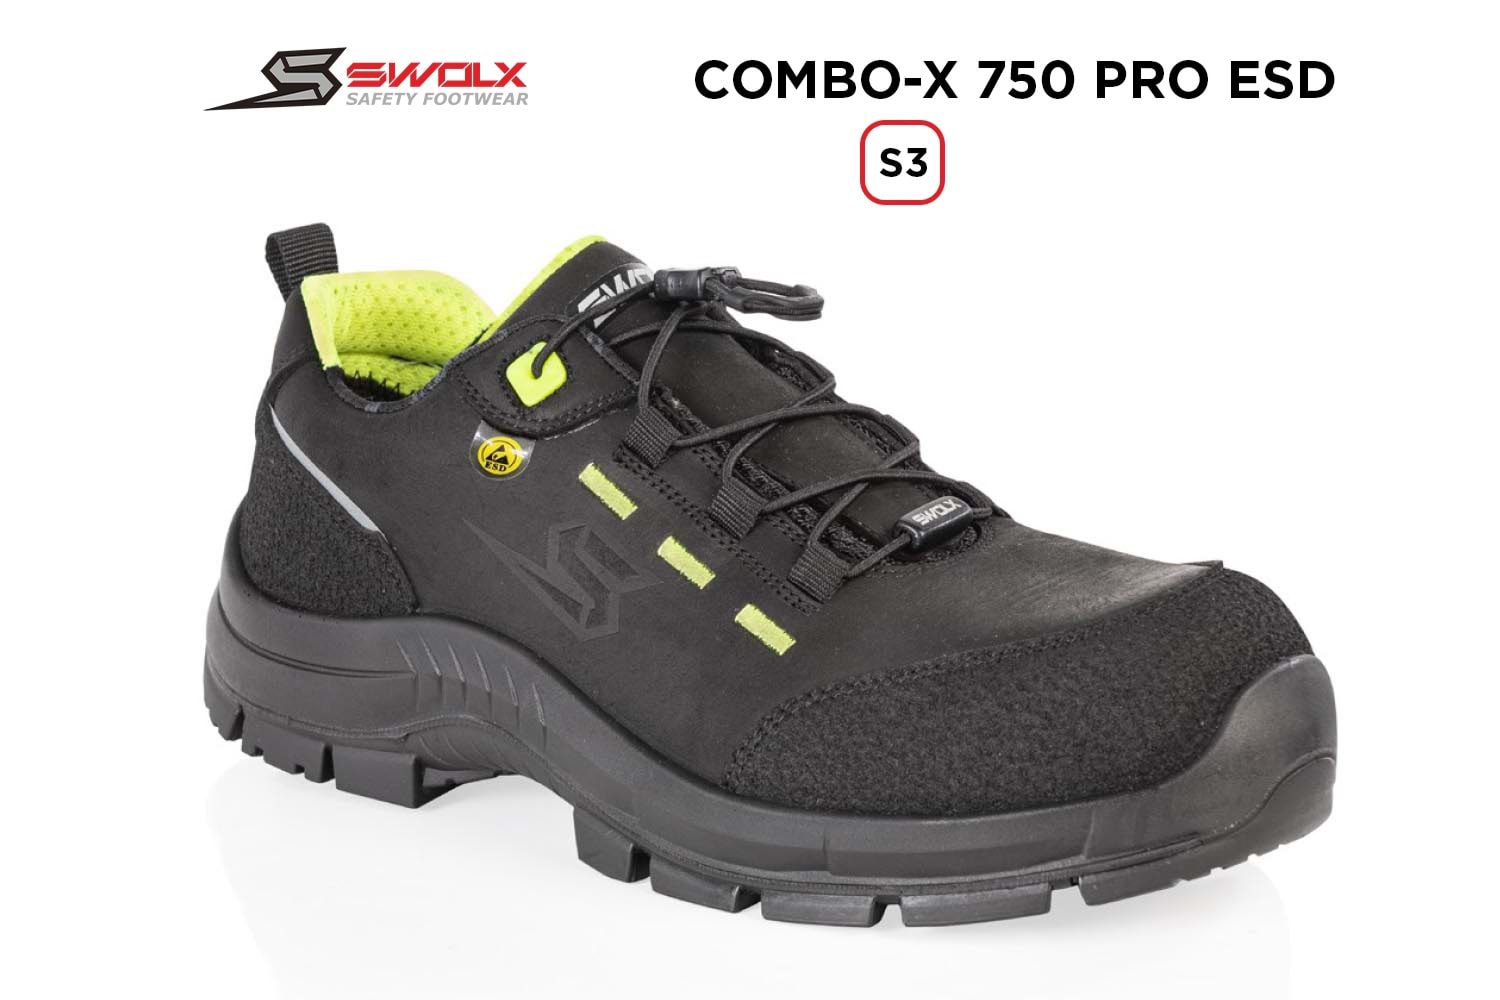 Swolx İş Ayakkabısı - Combo-X Pro Esd 750 S3 - 44